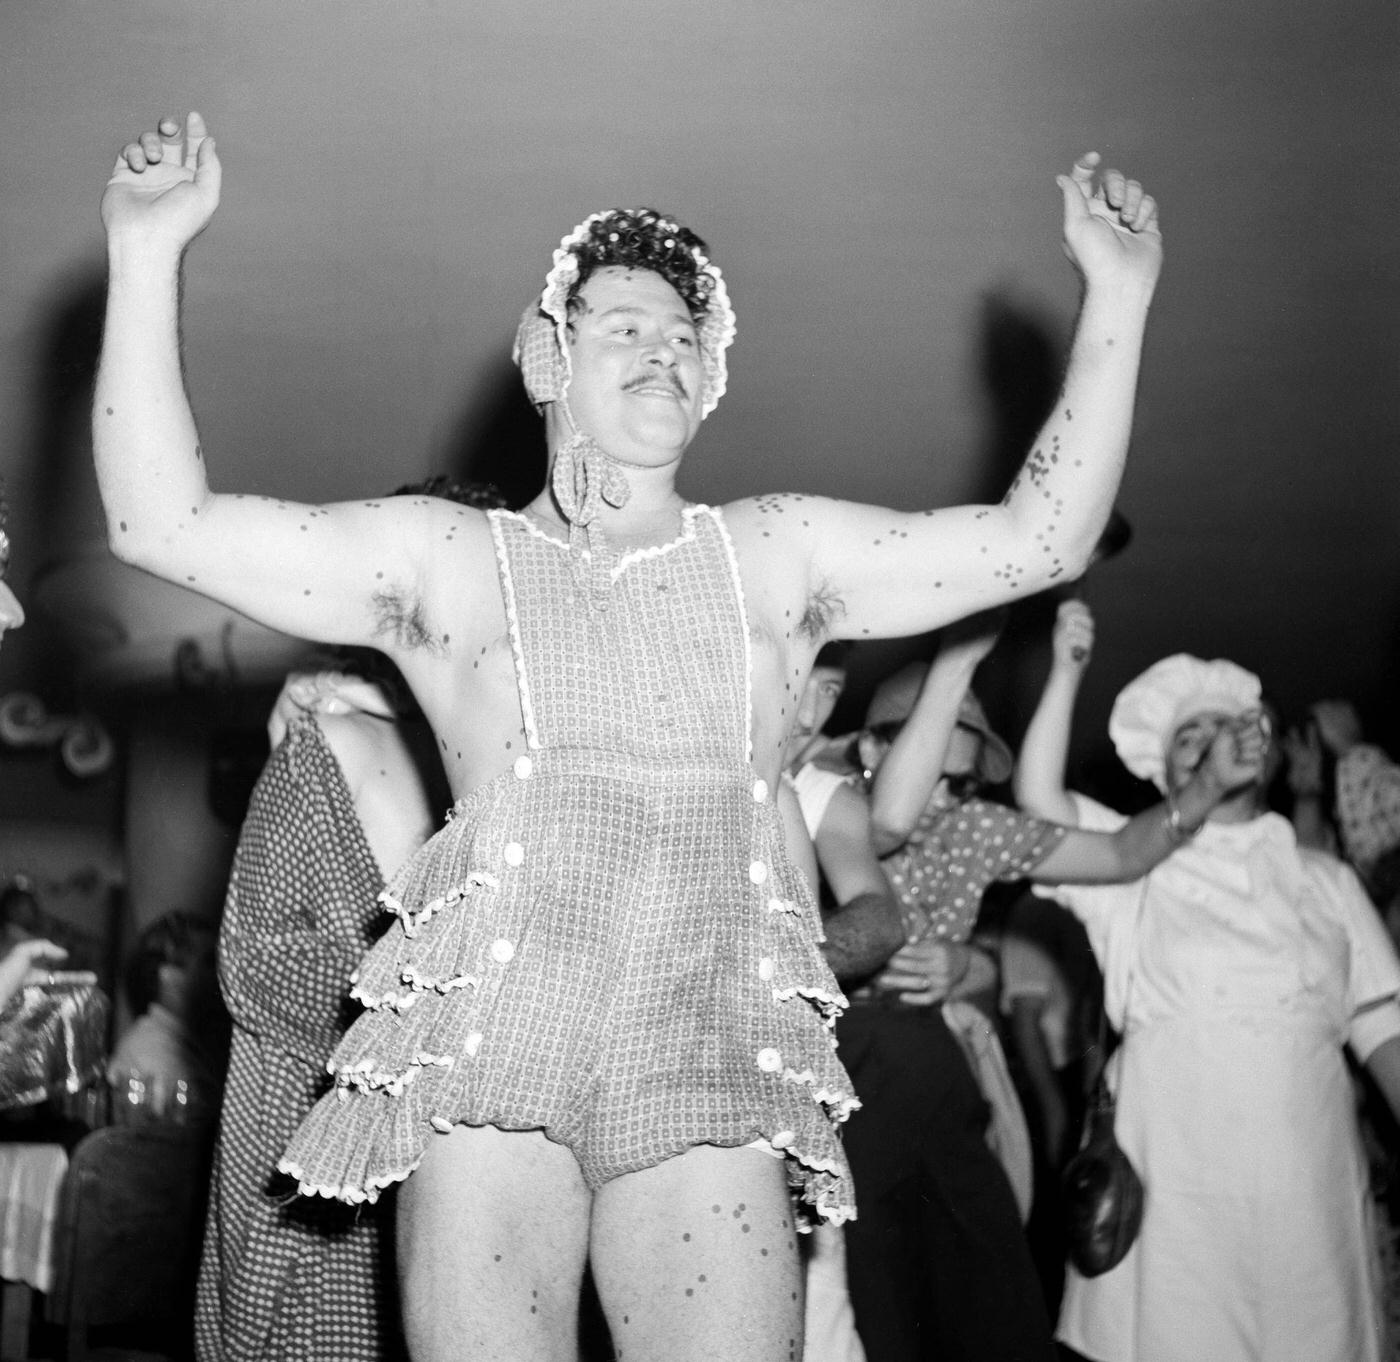 Costume Partygoer Dancing, Rio Carnival 1953